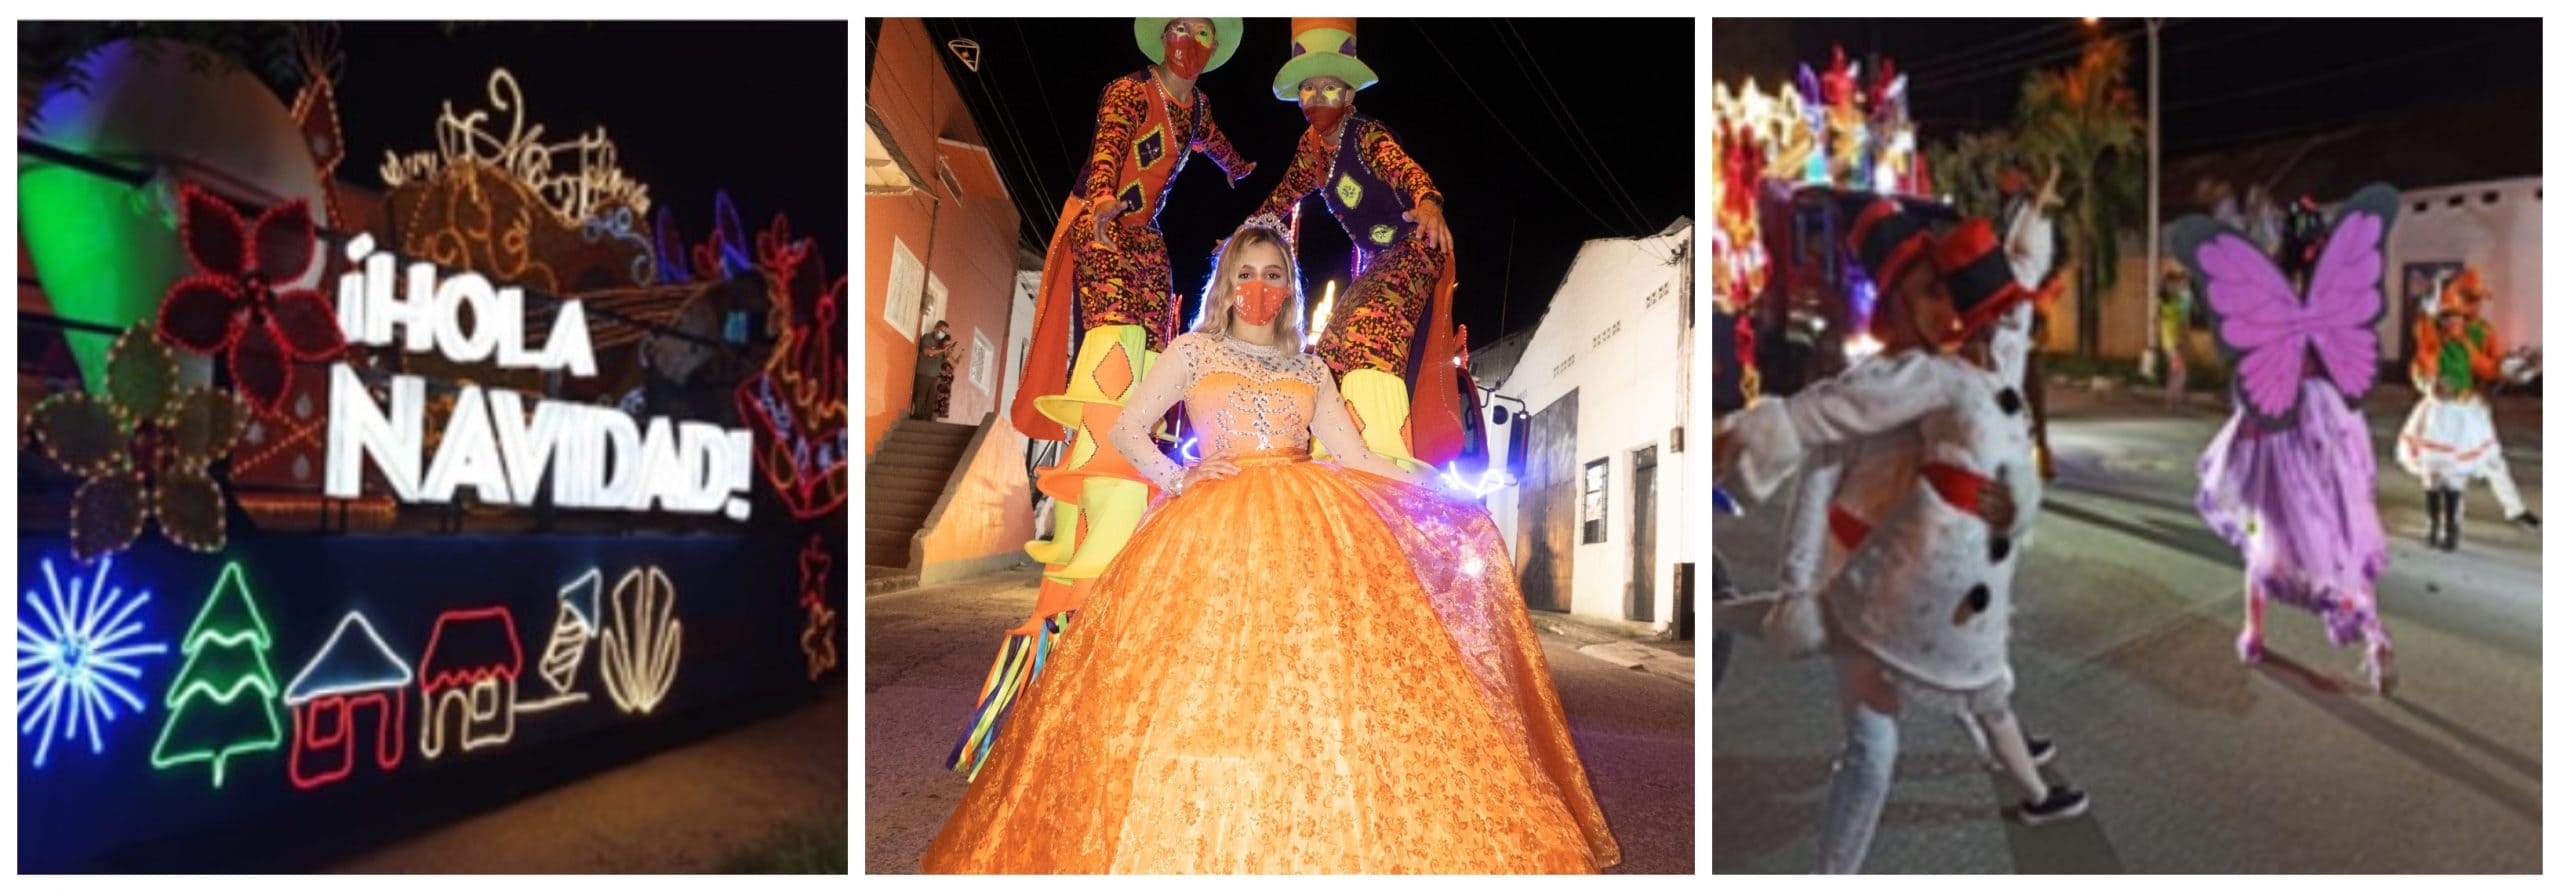 Celsia lleva su desfile mágico de Navidad a los clientes de Valle y Tolima